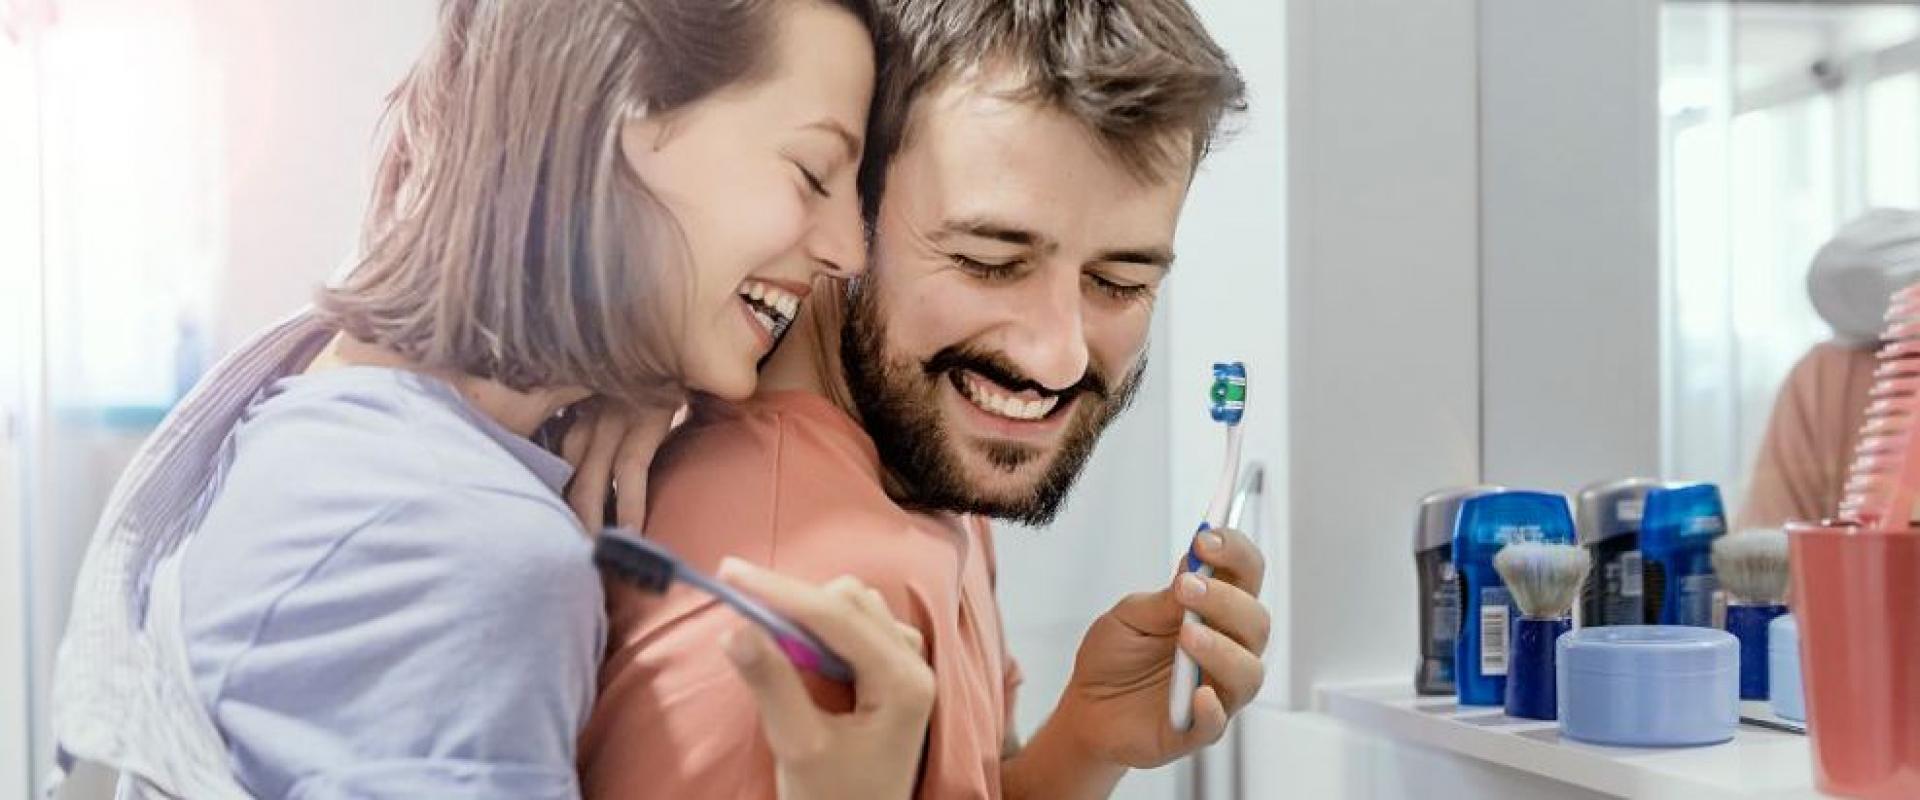 Jak Polacy dbają o higienę jamy ustnej?